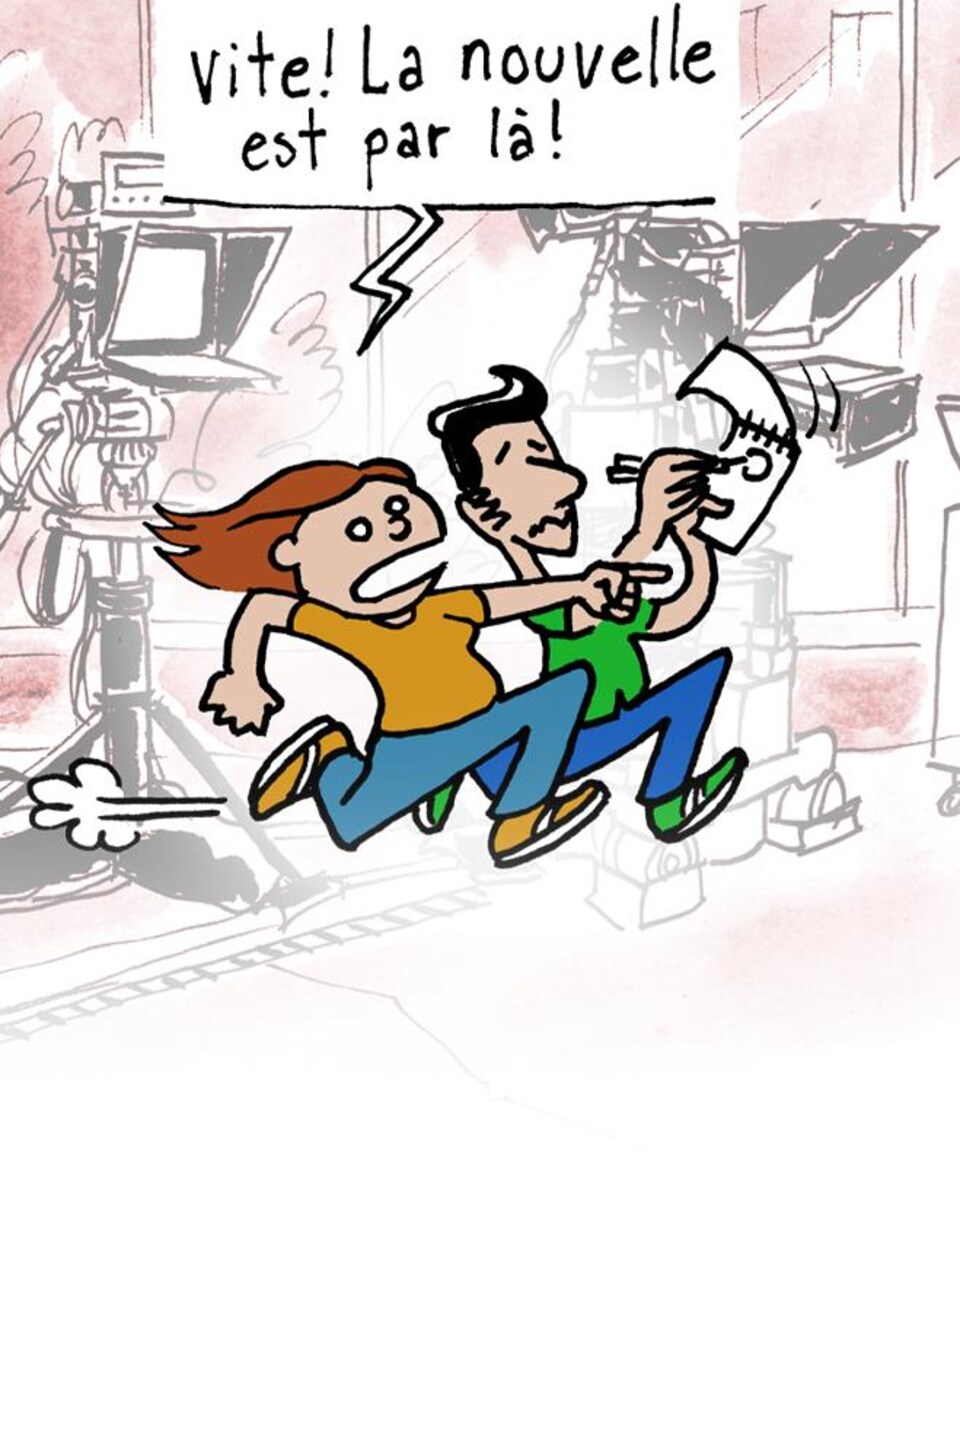 Entête illustrée, où on voit deux personnages qui courent sur un plateau de télévision